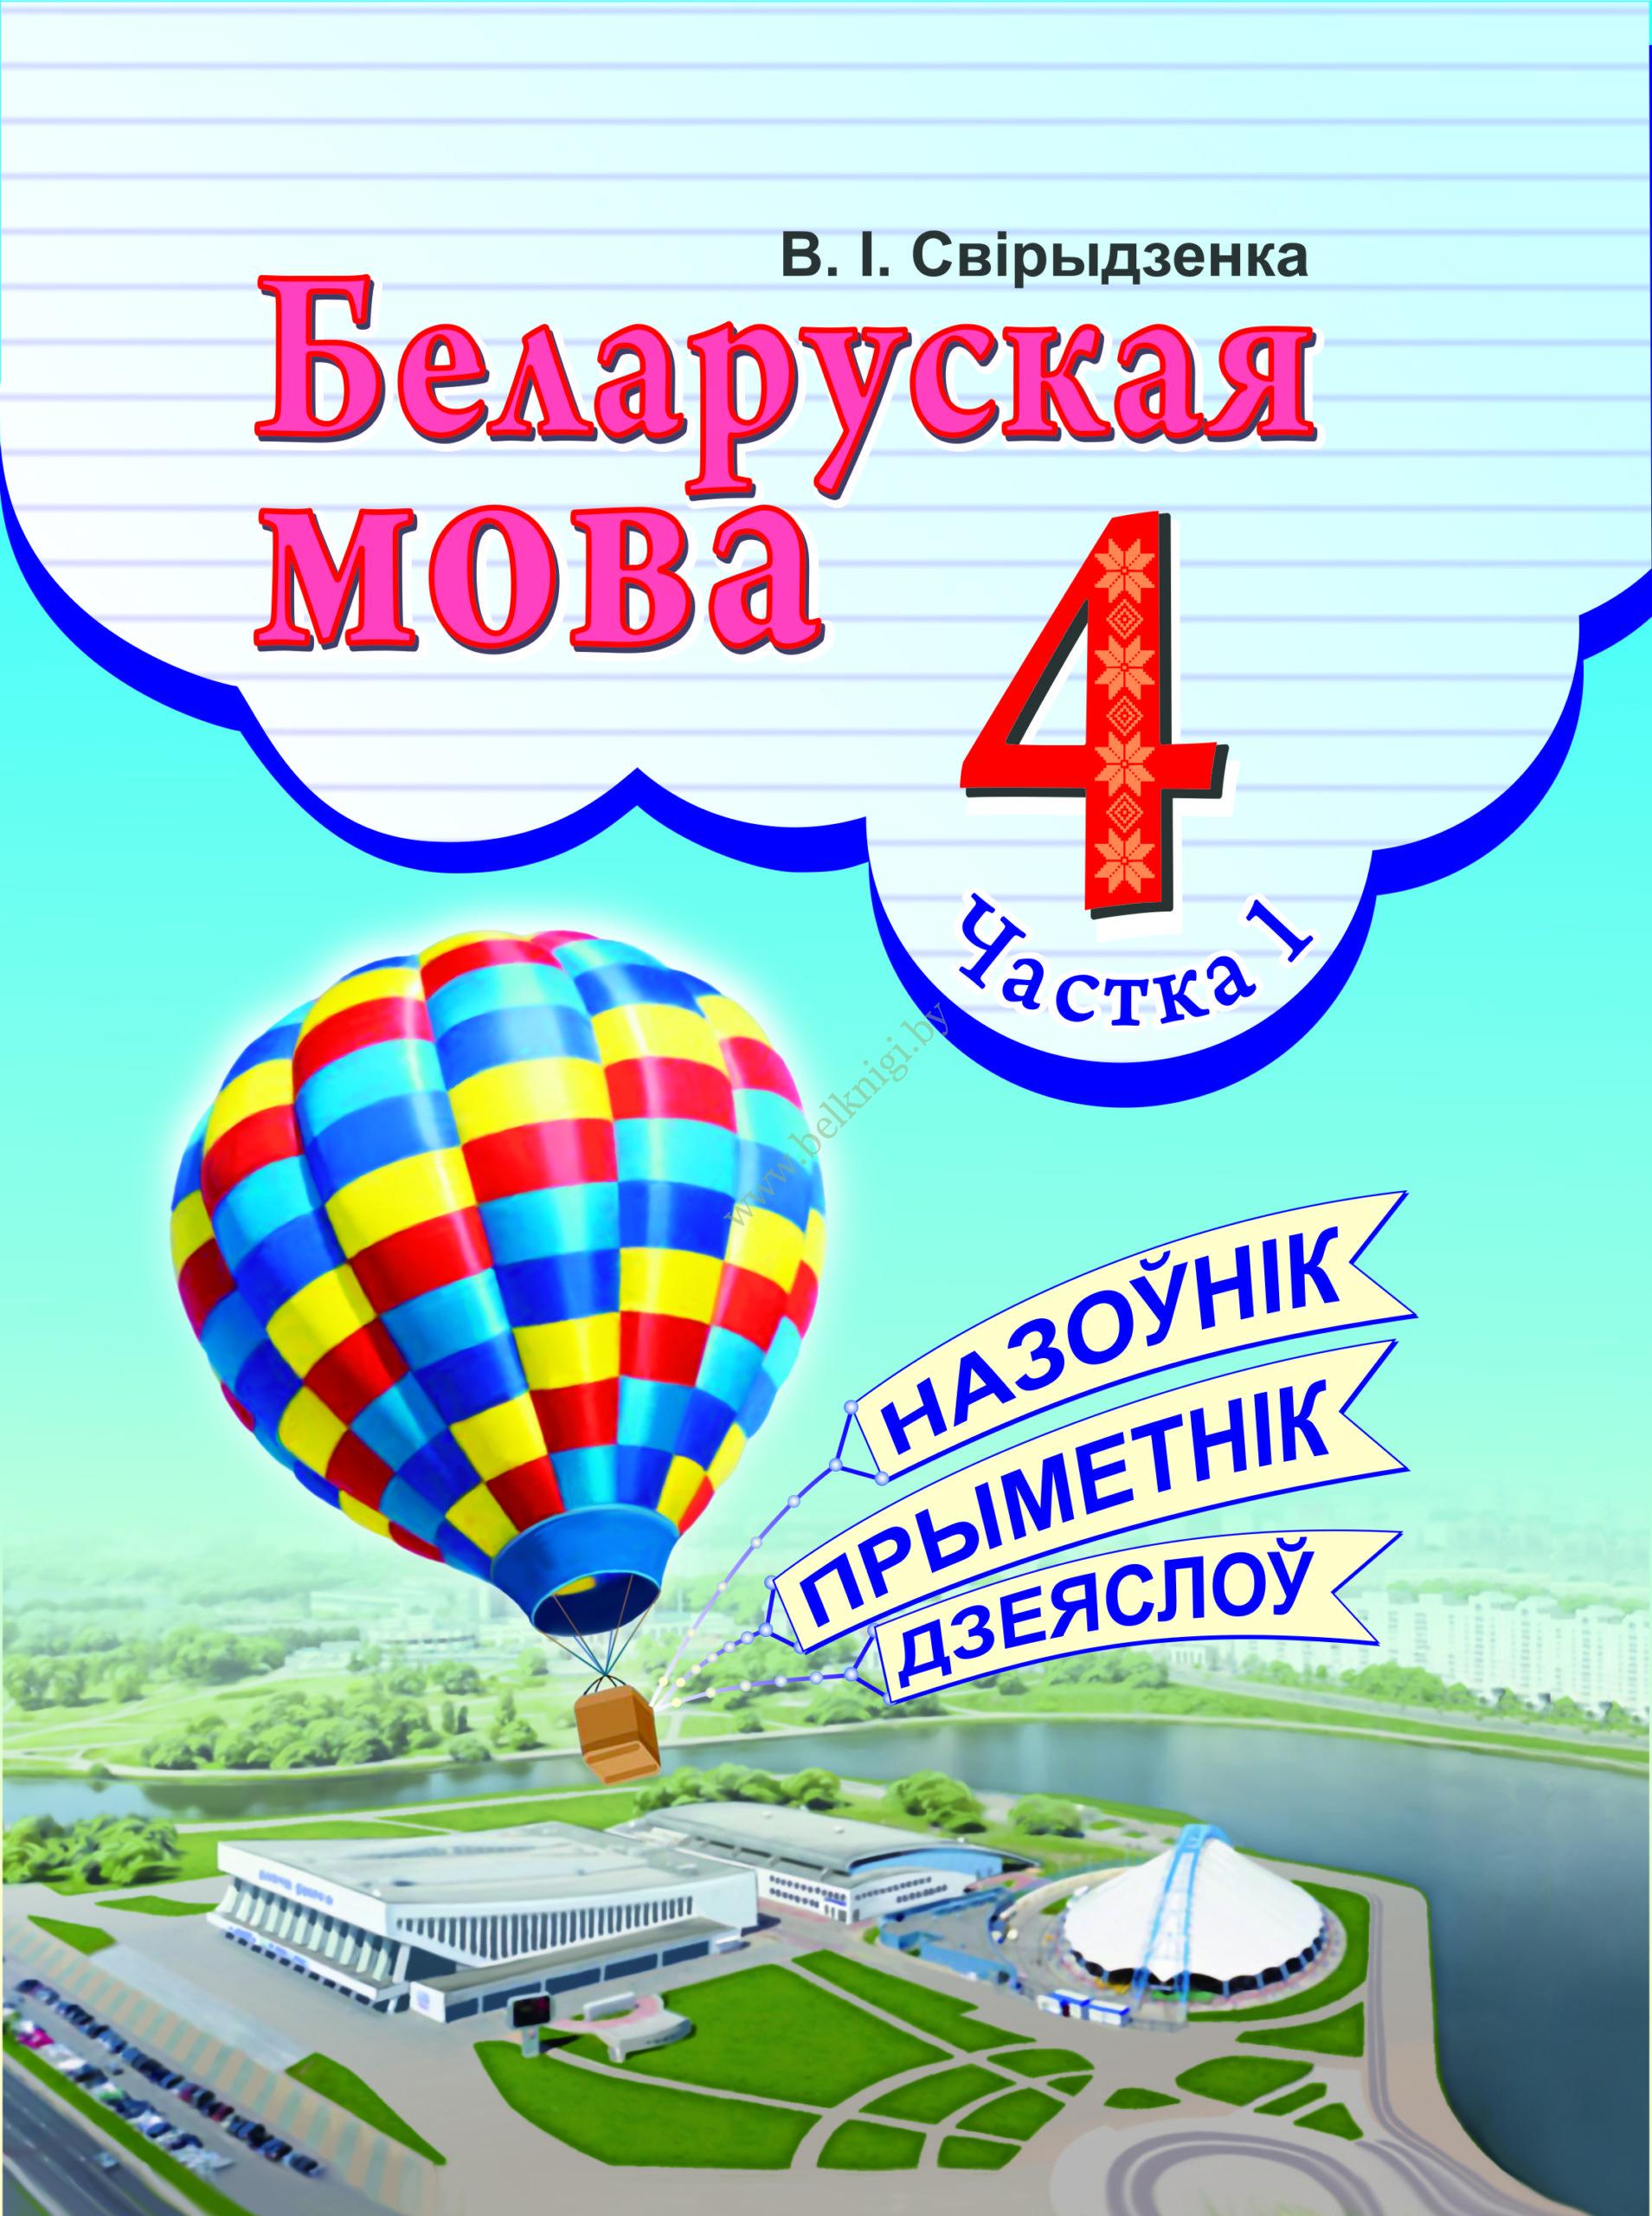 Беларускай мове 9 класс